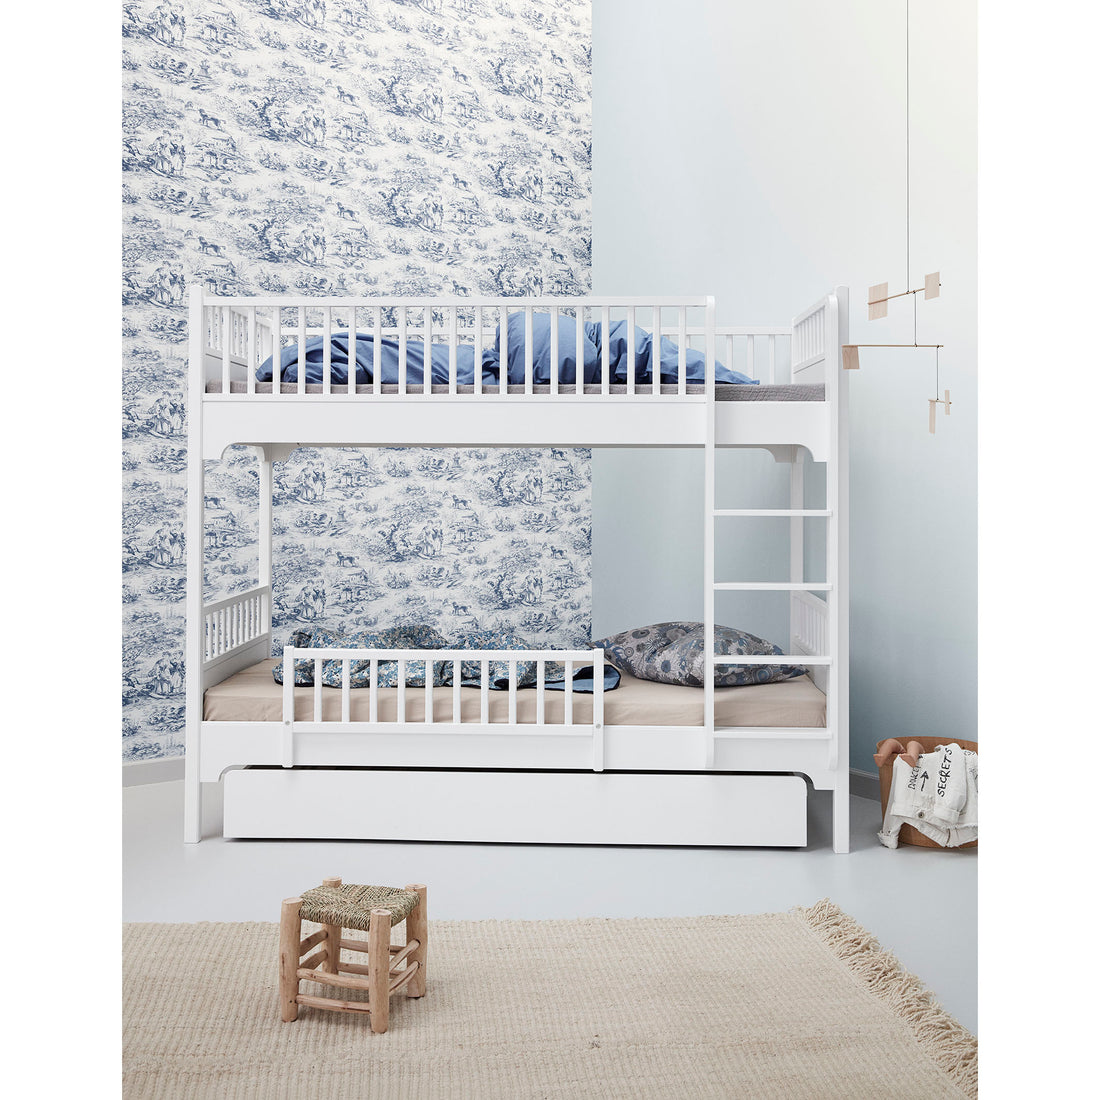 oliver-furniture-seaside-bunk-bed-with-vertical-ladder- (6)